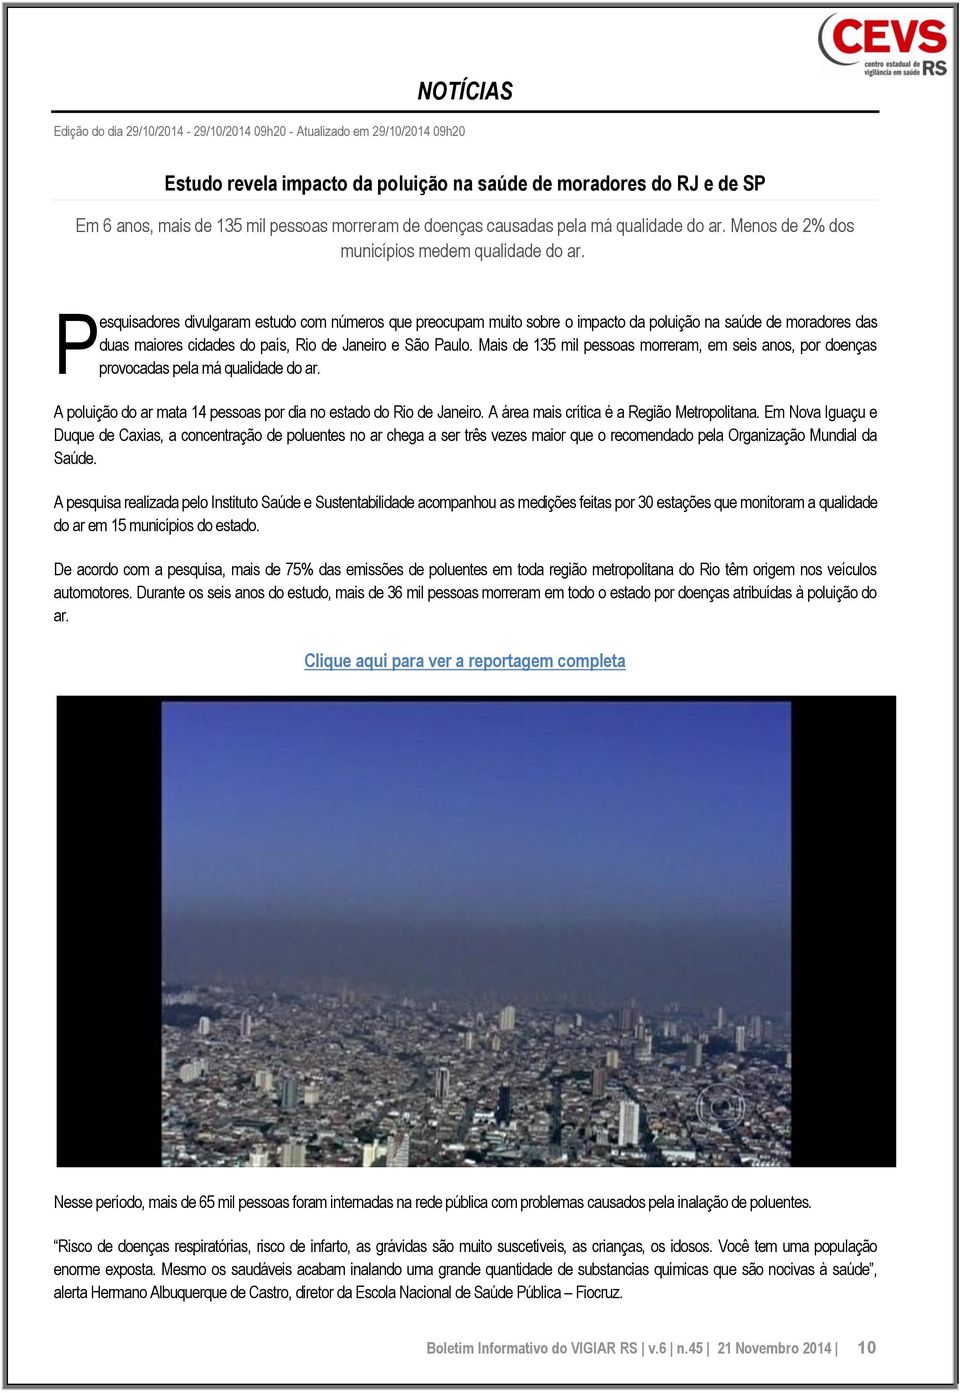 P esquisadores divulgaram estudo com números que preocupam muito sobre o impacto da poluição na saúde de moradores das duas maiores cidades do país, Rio de Janeiro e São Paulo.